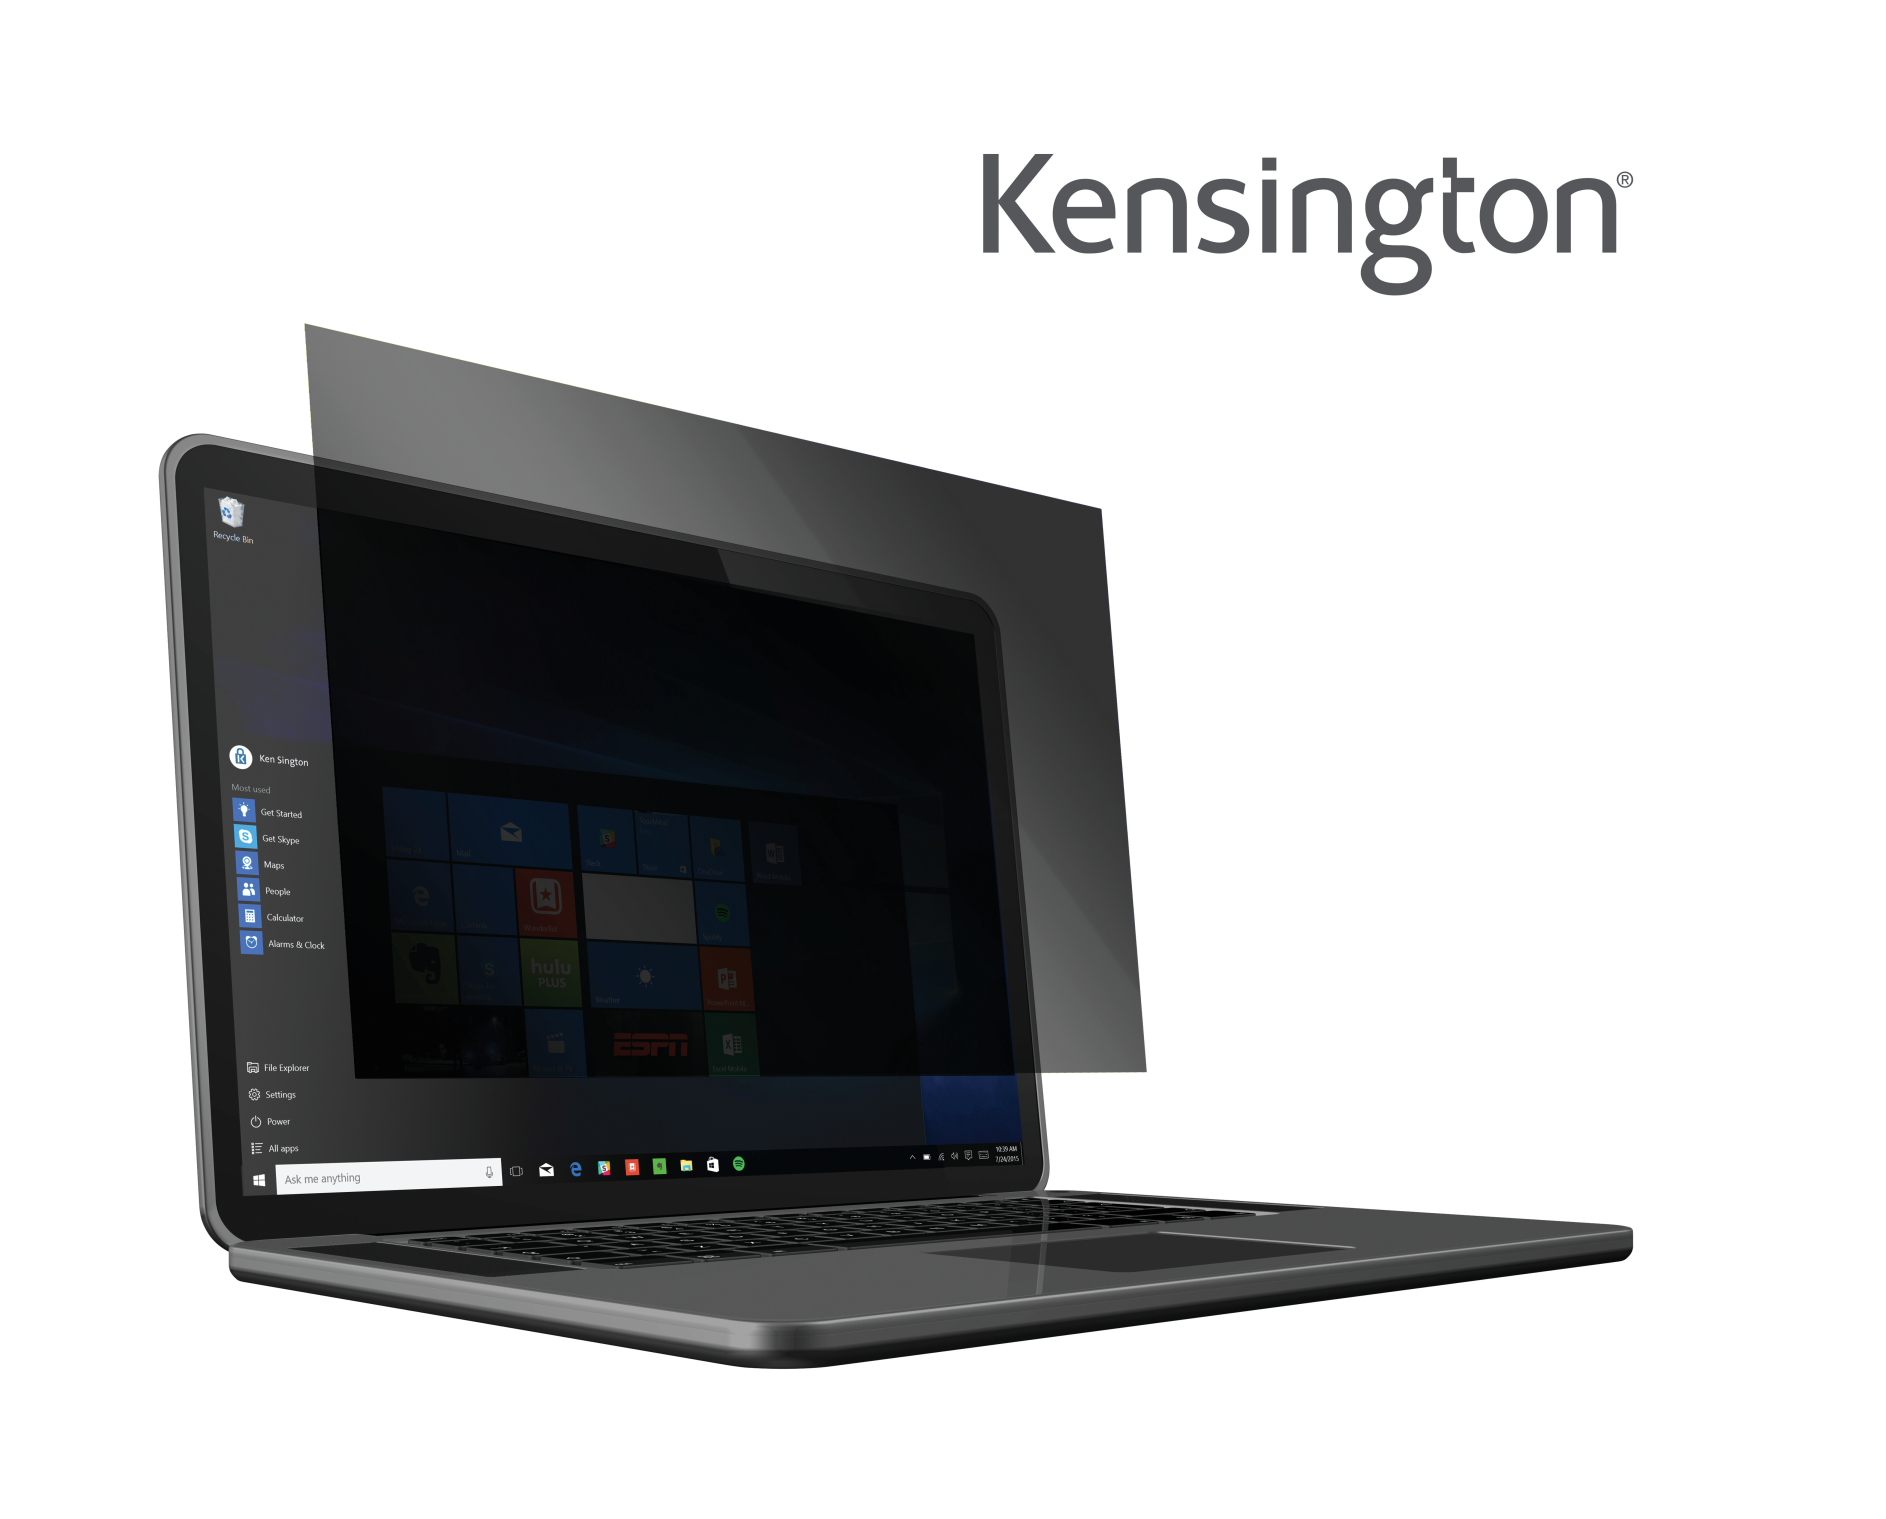 Kensington privátní filtr pro notebook 16", 16:10, dvousměrný, odnímatelný